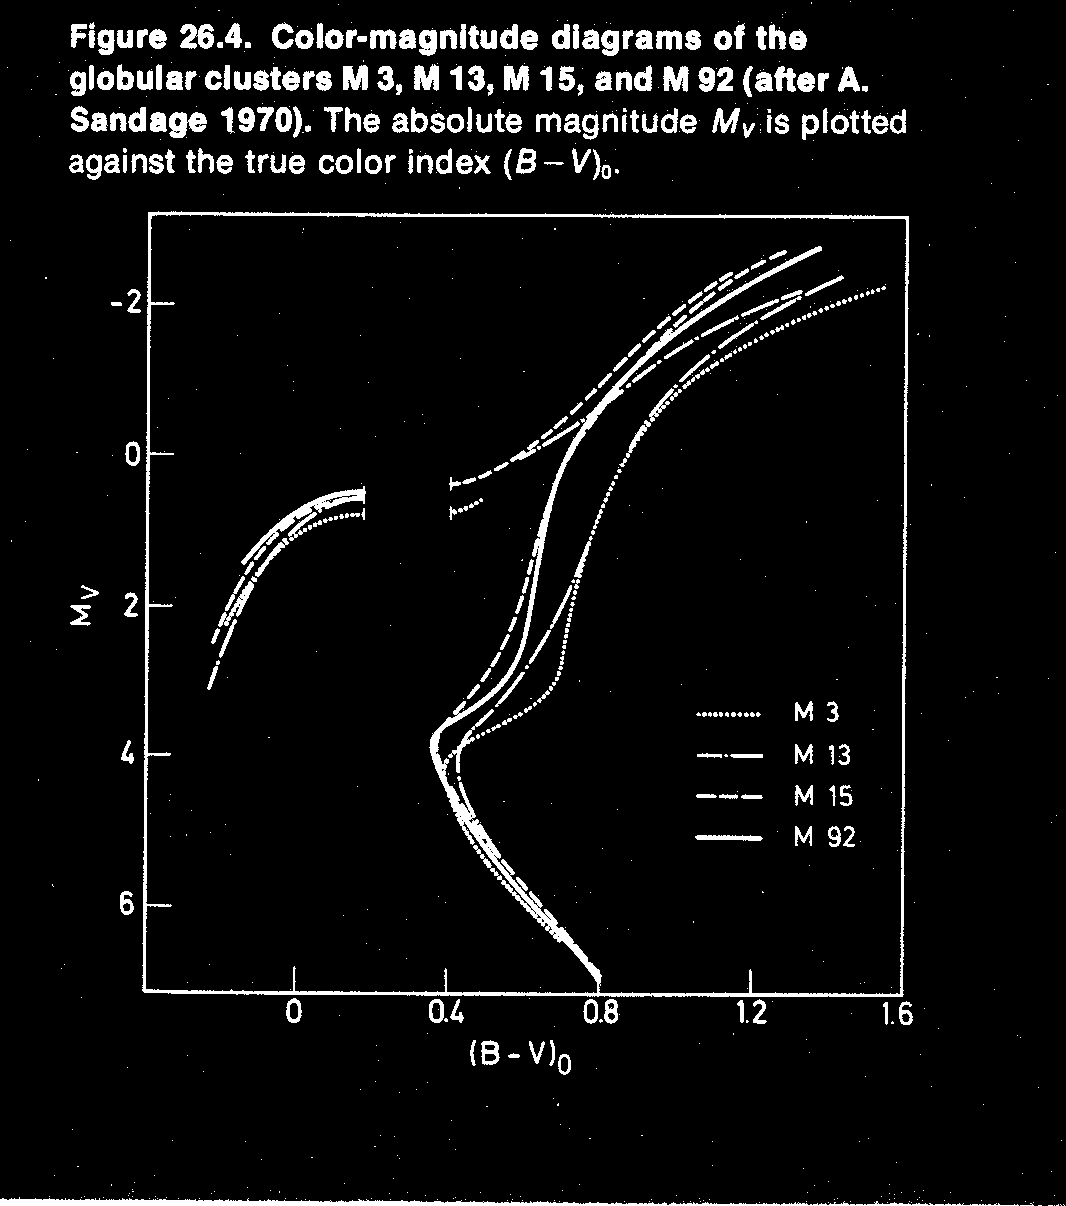 Diagrama Color-Magnitud de un cúmulo abierto